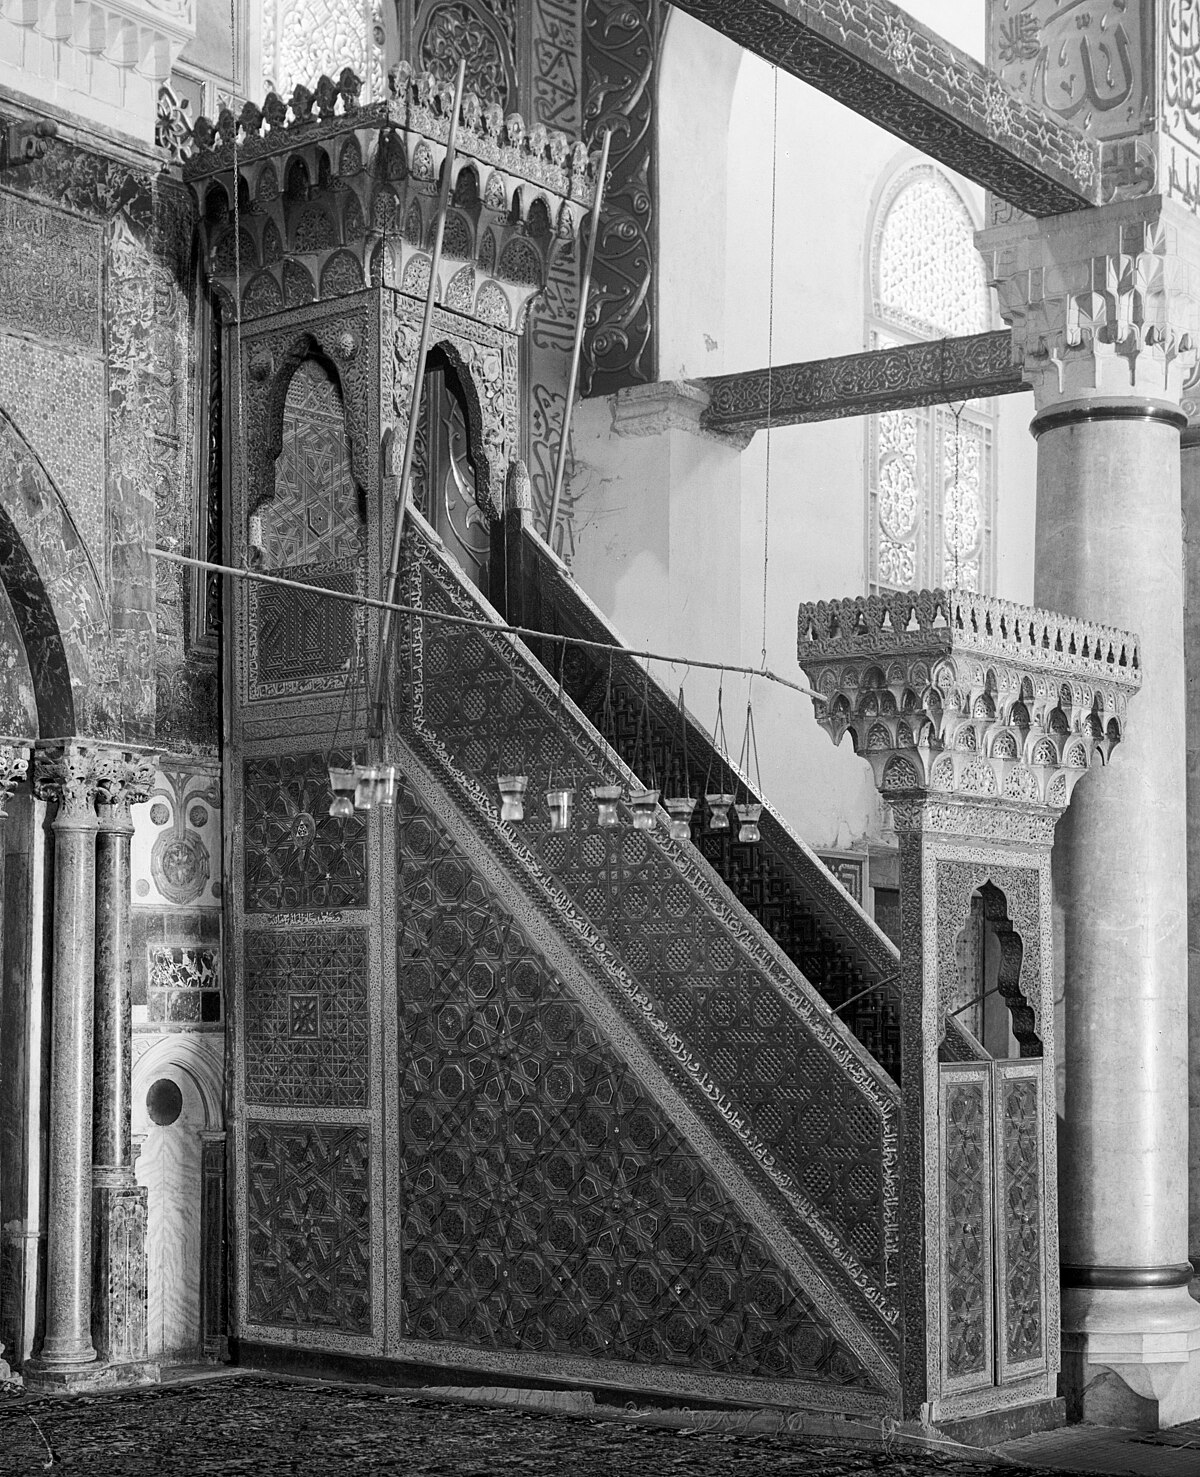 Фото минбар в мечети